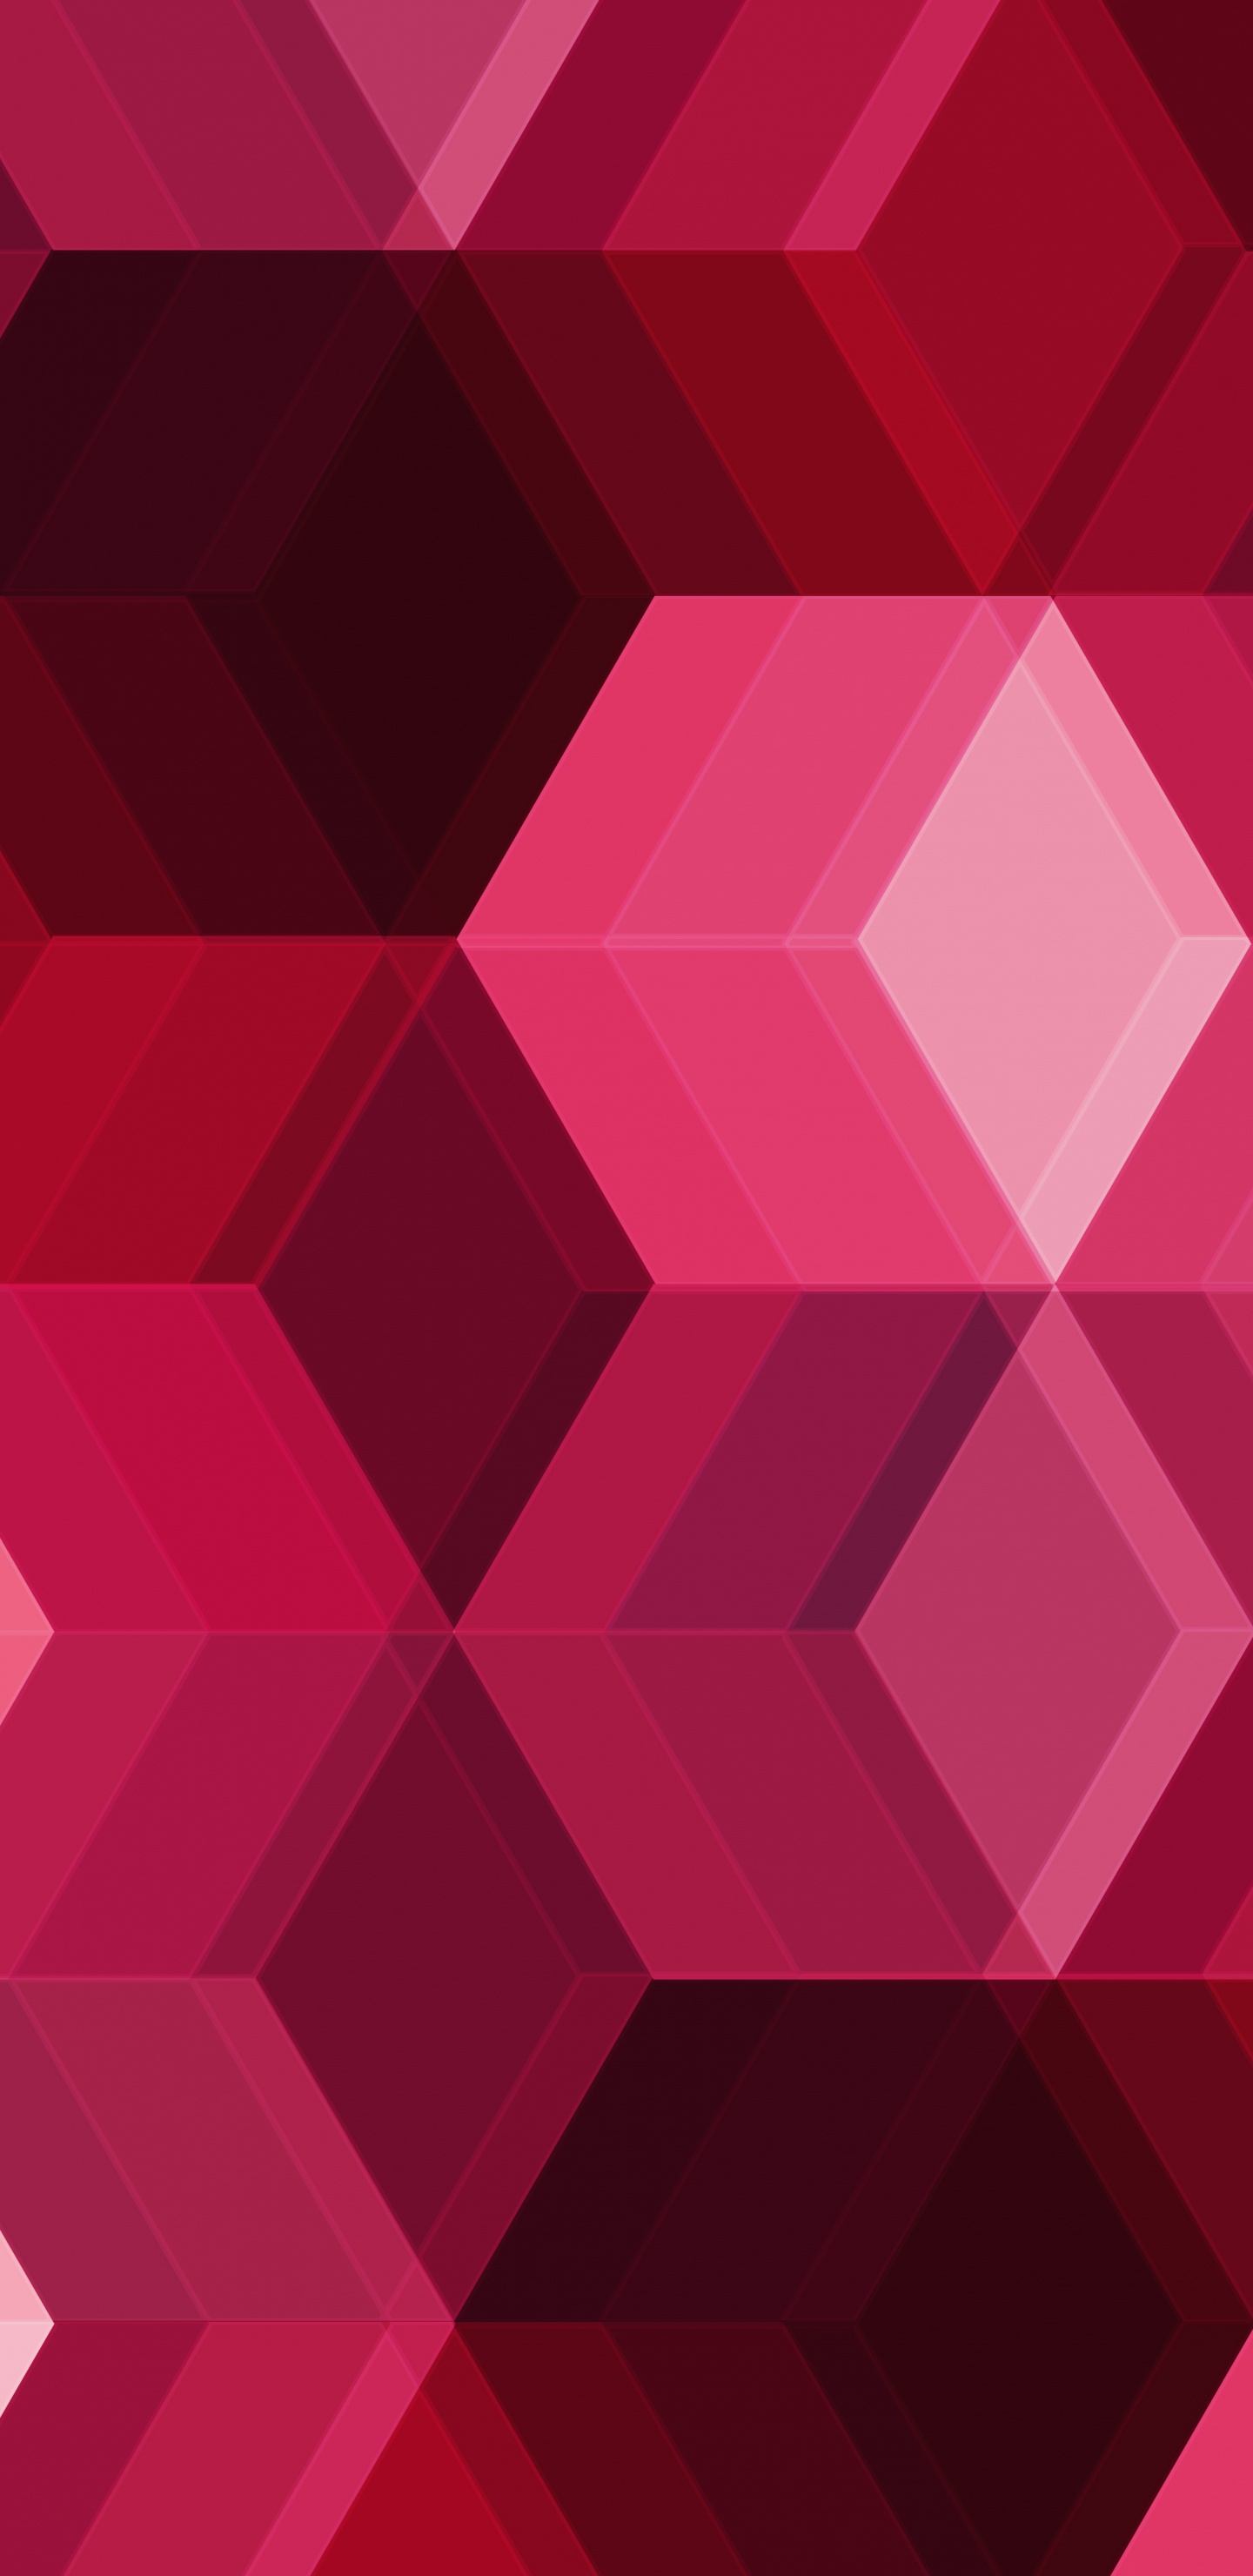 粉红色, 品红色, 对称, 立方体, 形状 壁纸 1440x2960 允许